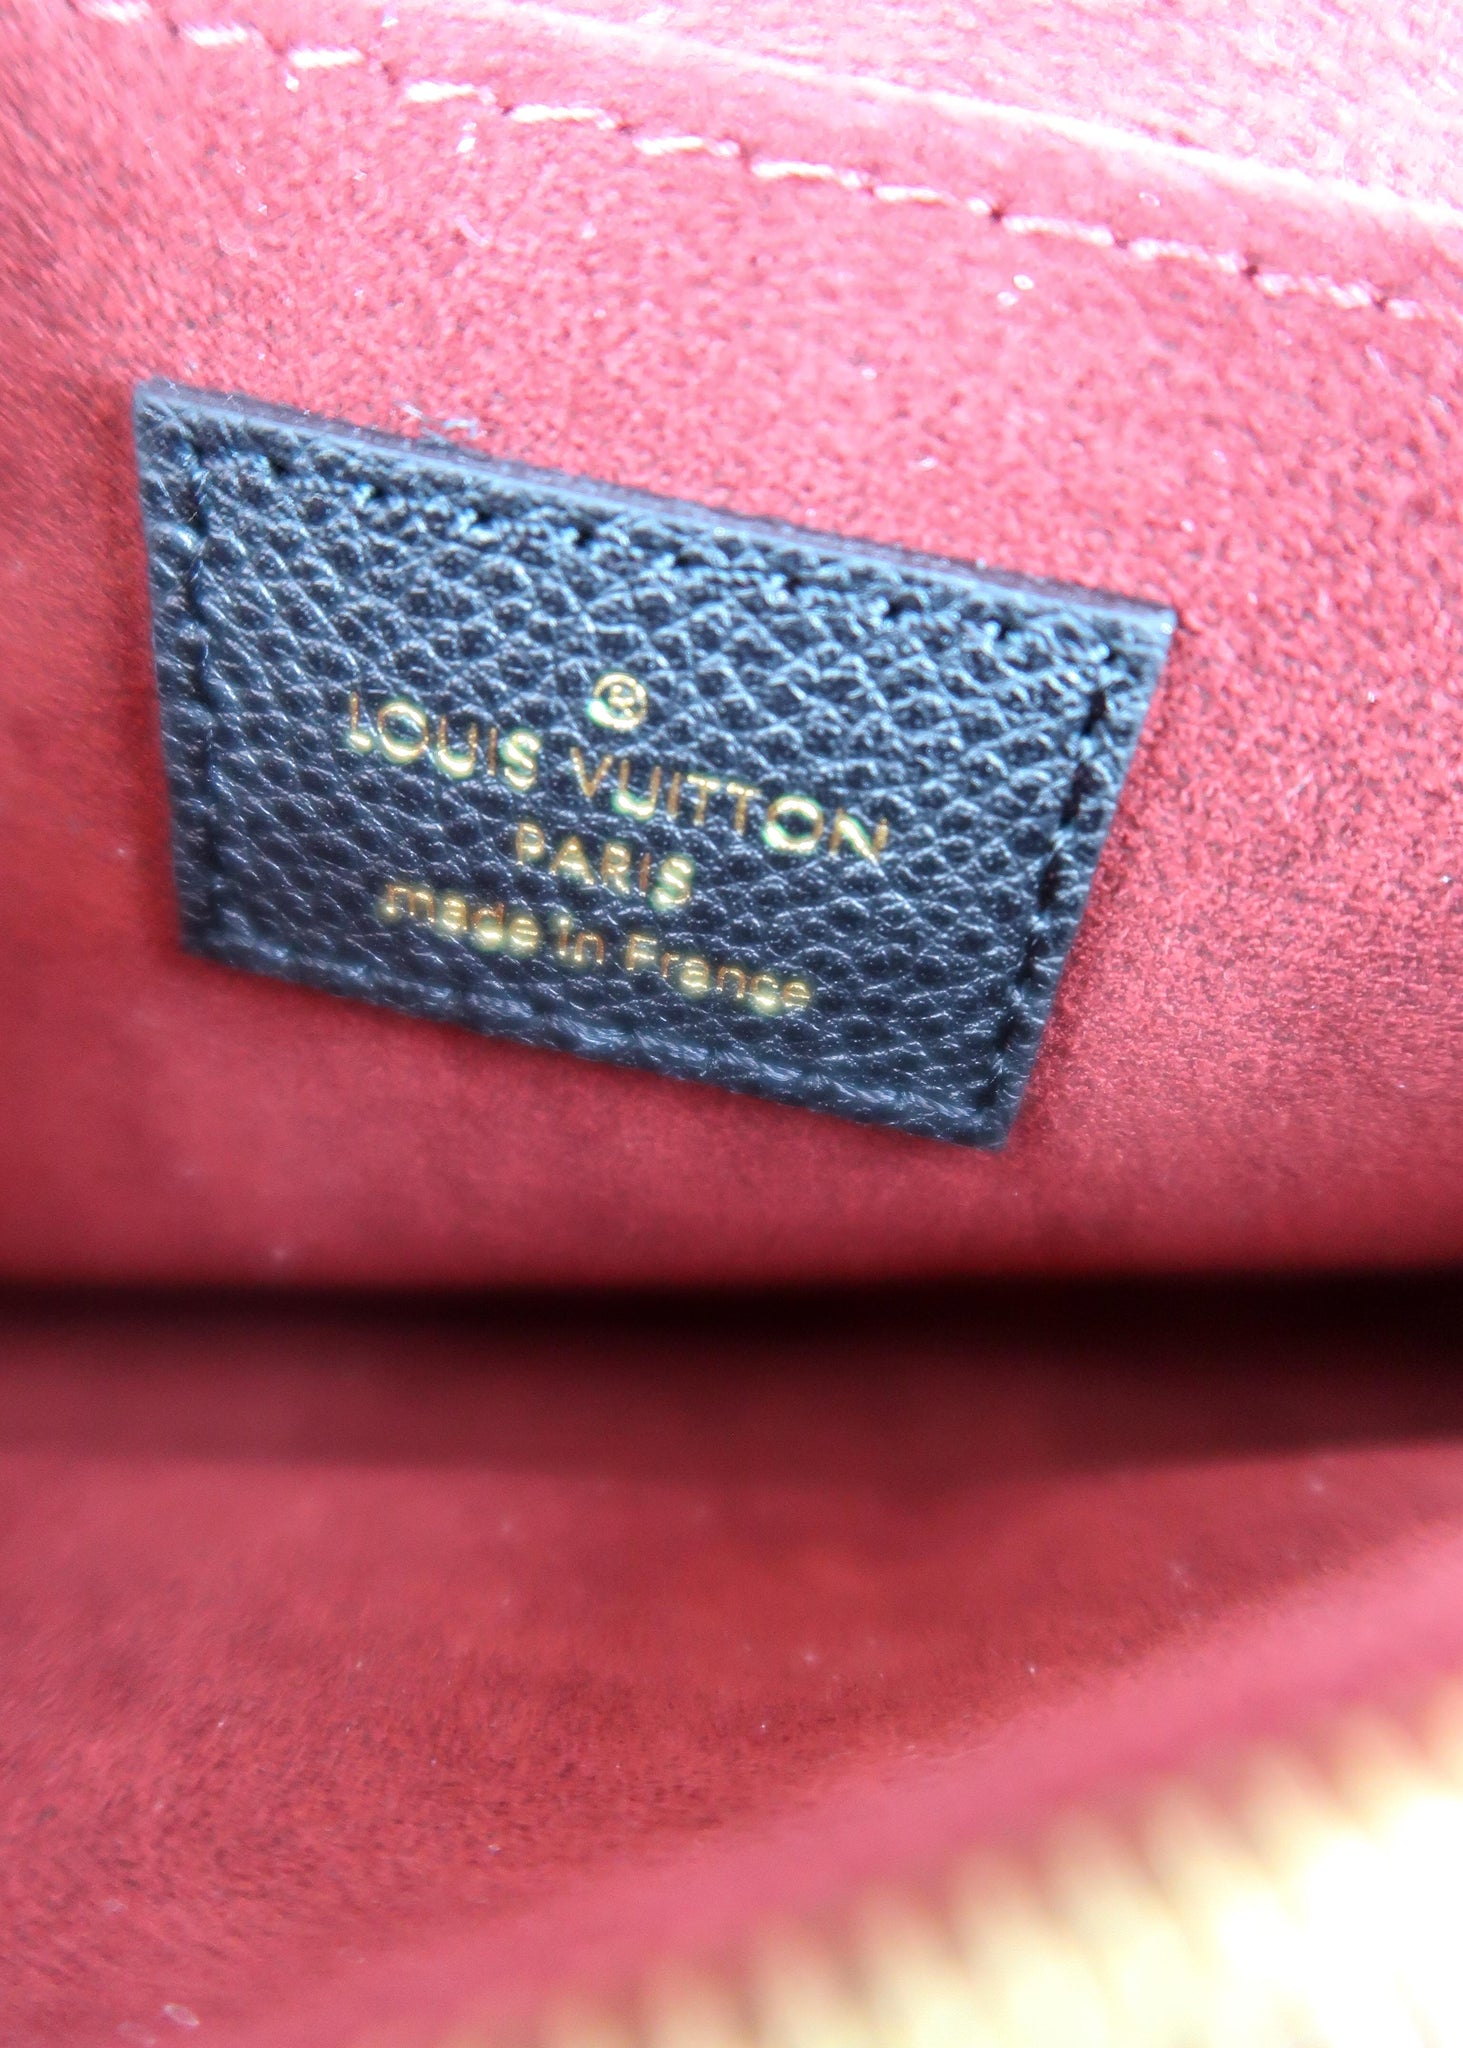 Handbags Louis Vuitton LV Madeleine Bb